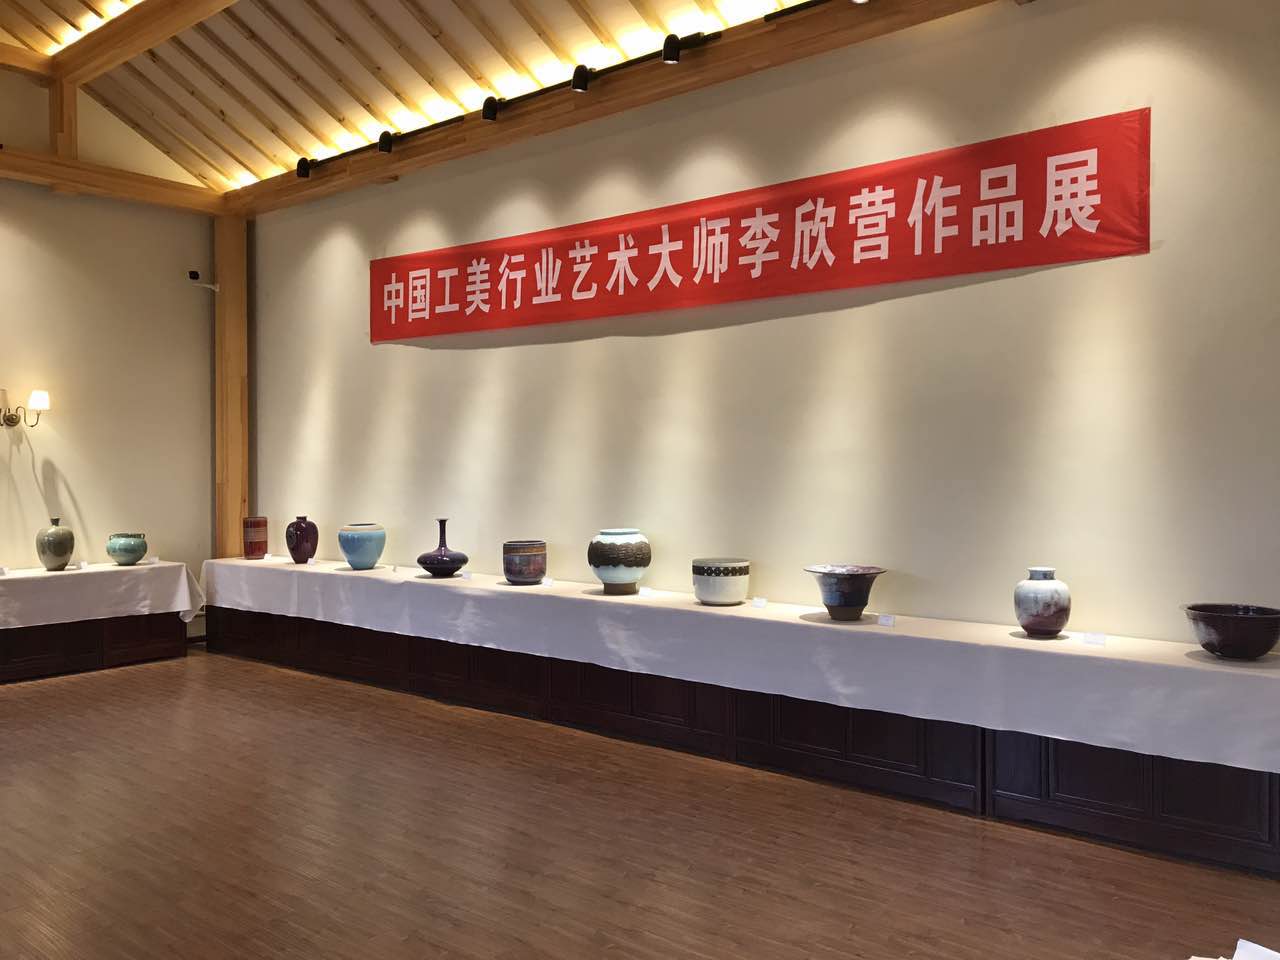 大师匠心 中国工美行业艺术大师李欣营作品展在郑州举办